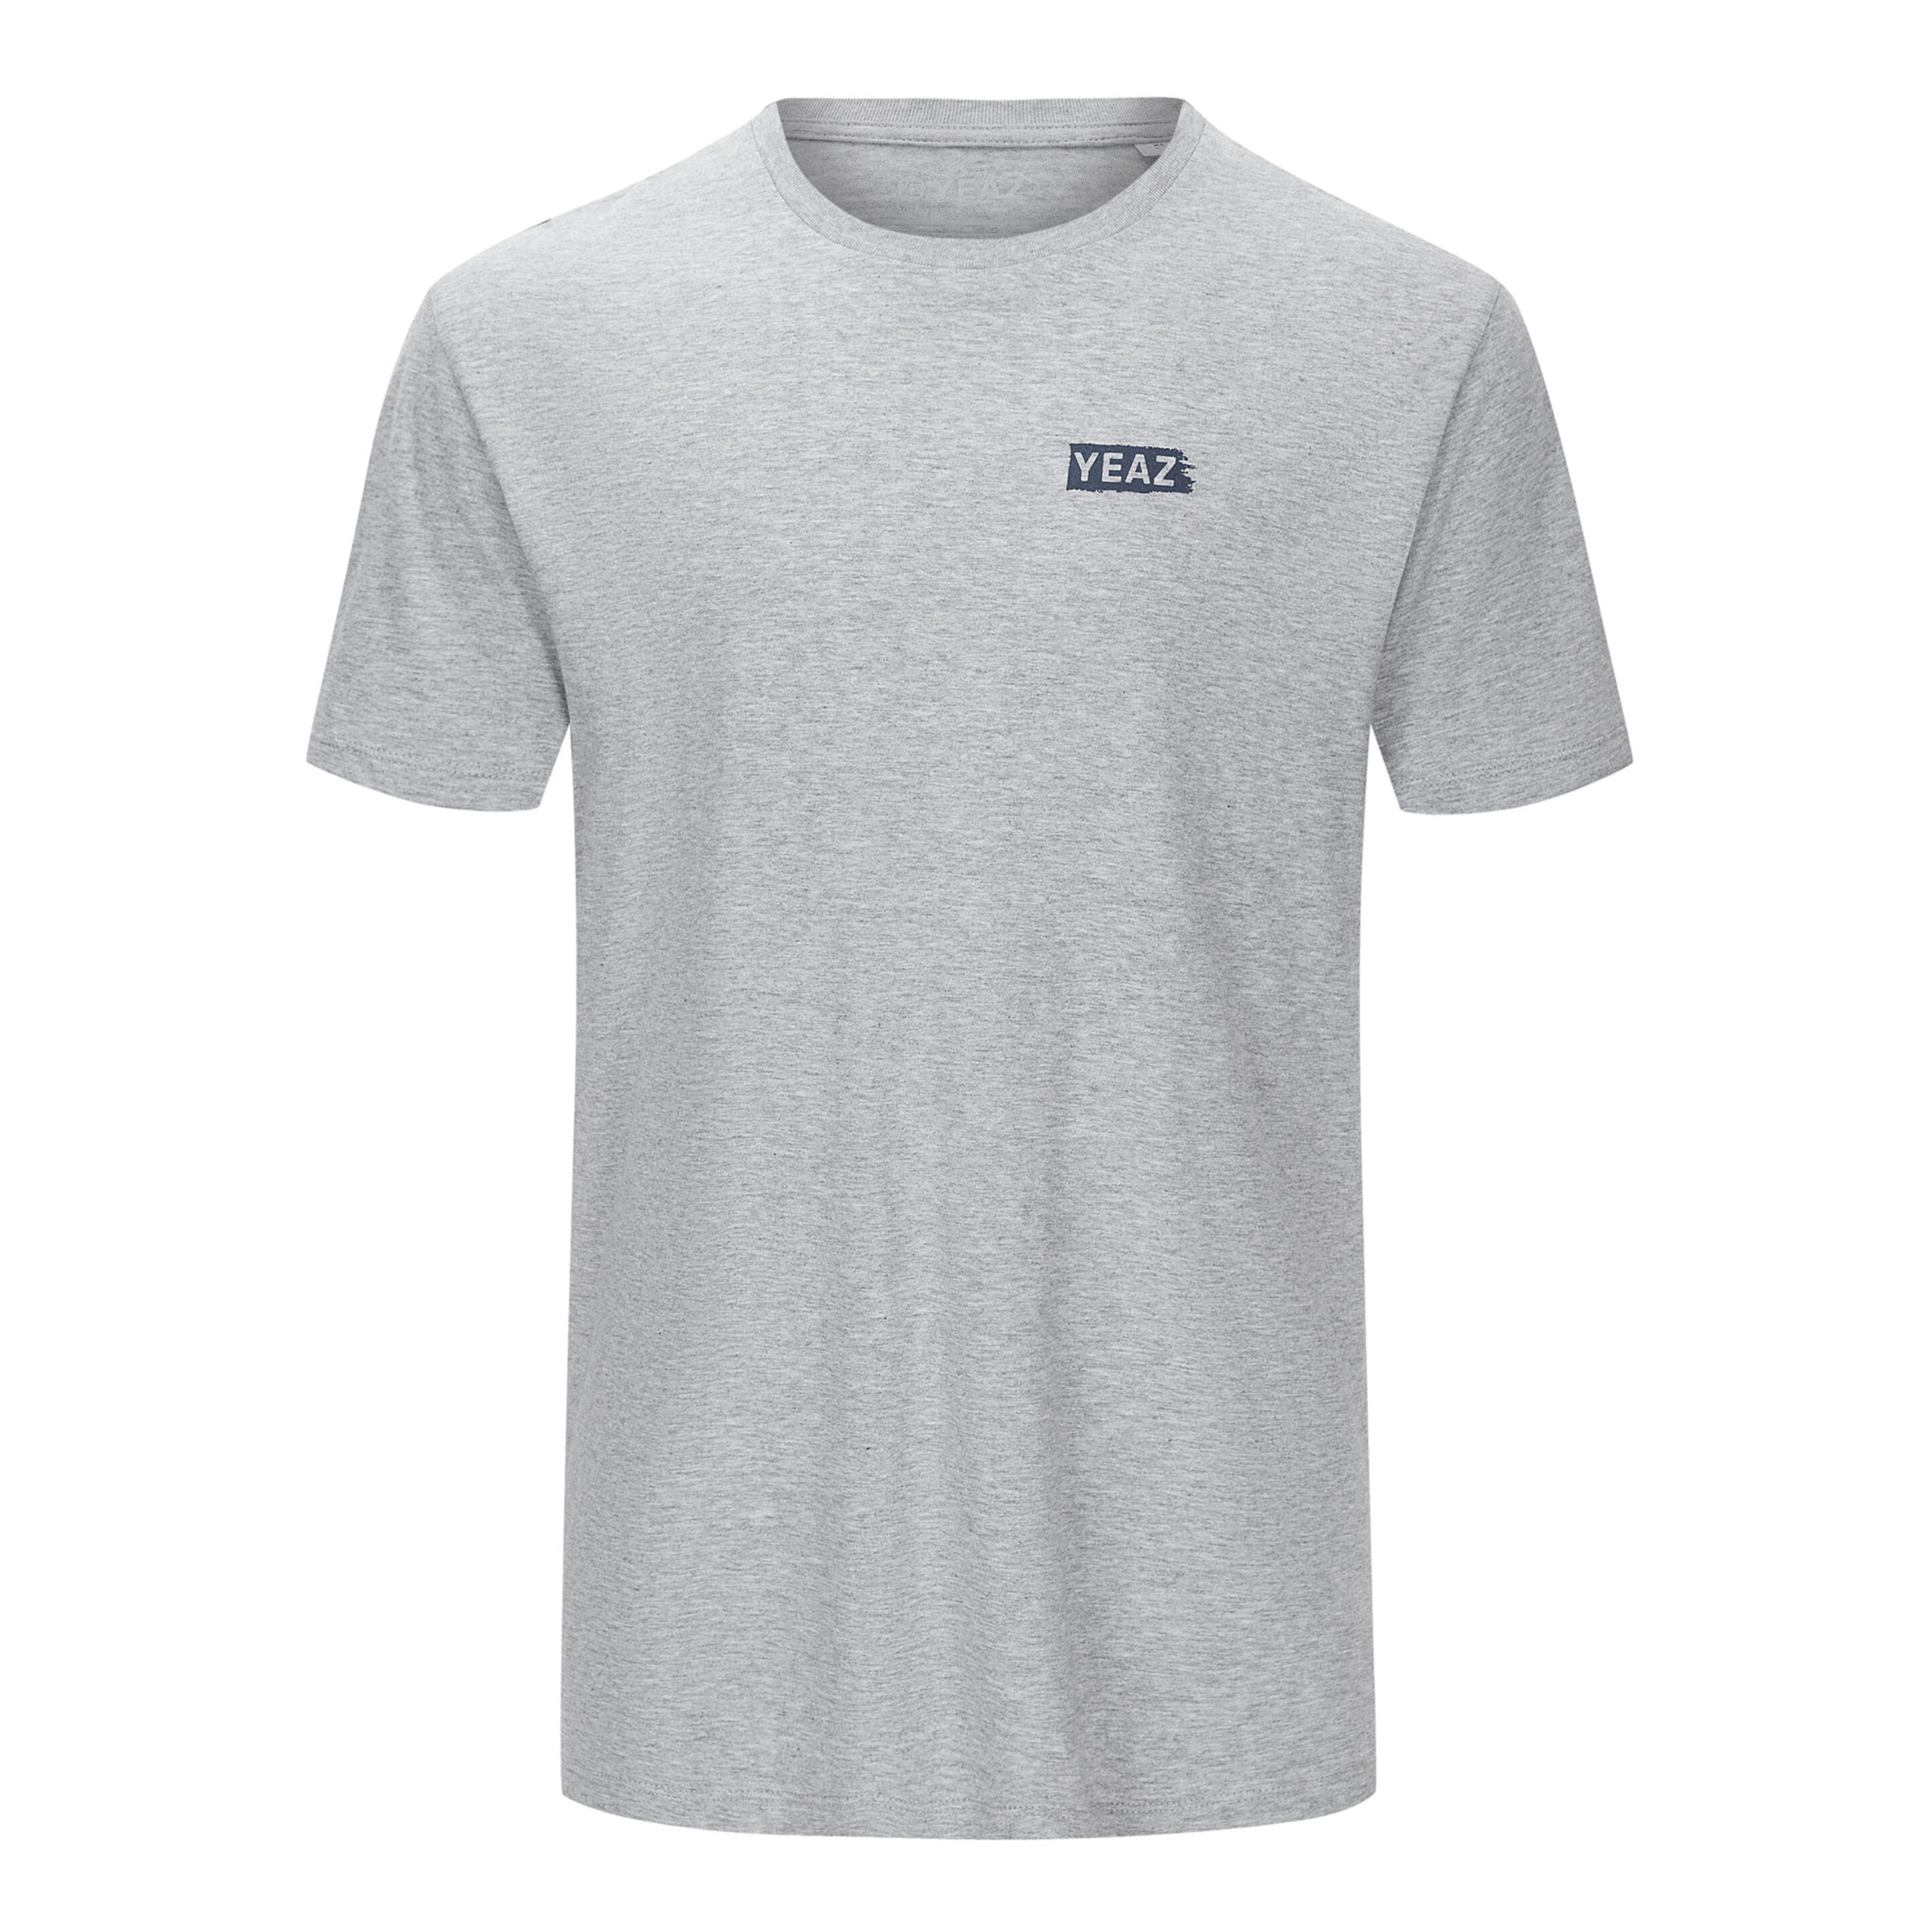 Camiseta Yeaz Chay - gris - 